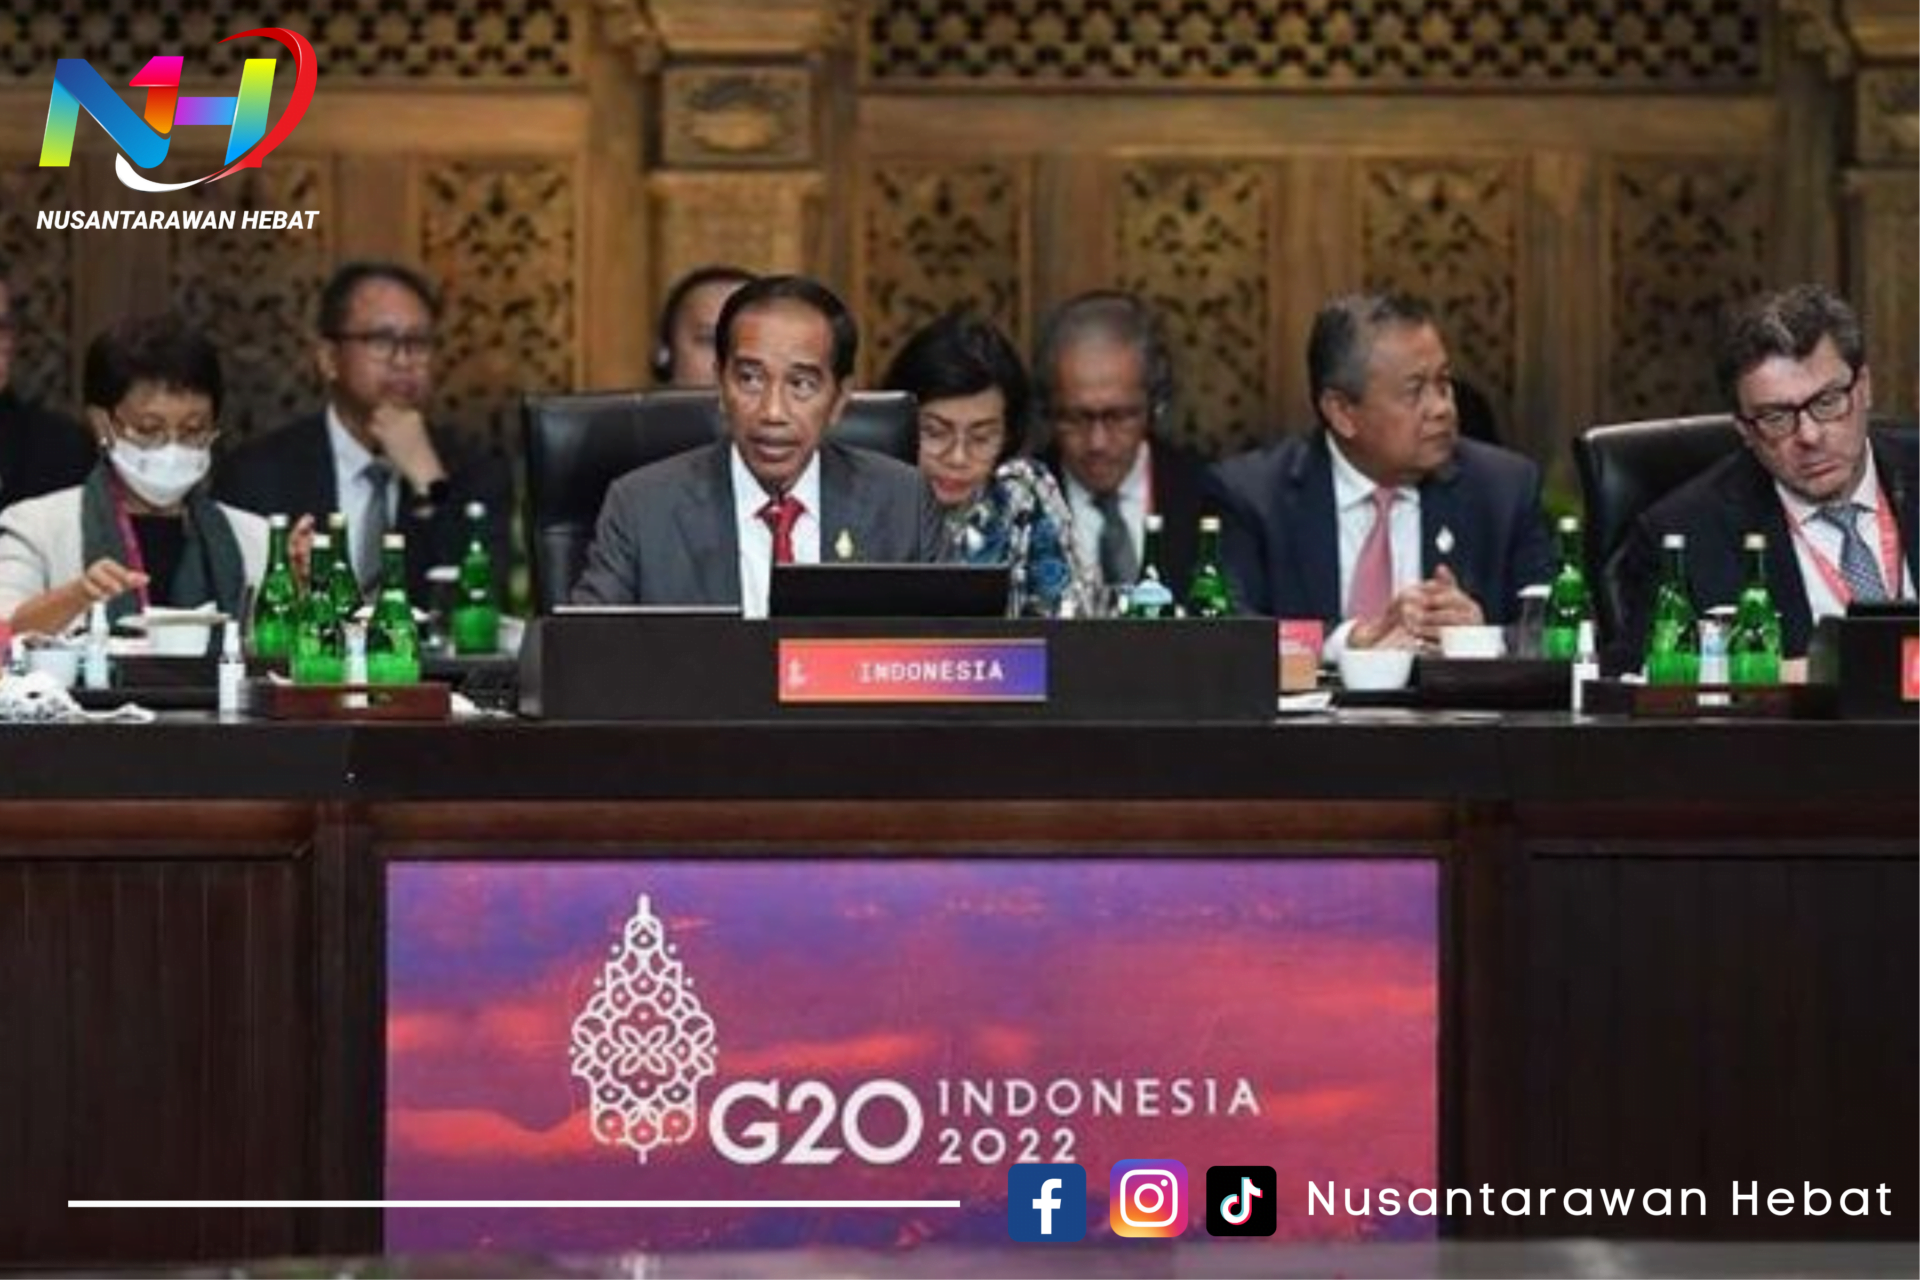 KTT G20 DI BALI SUKSES BESAR, INDONESIA BANGGA!